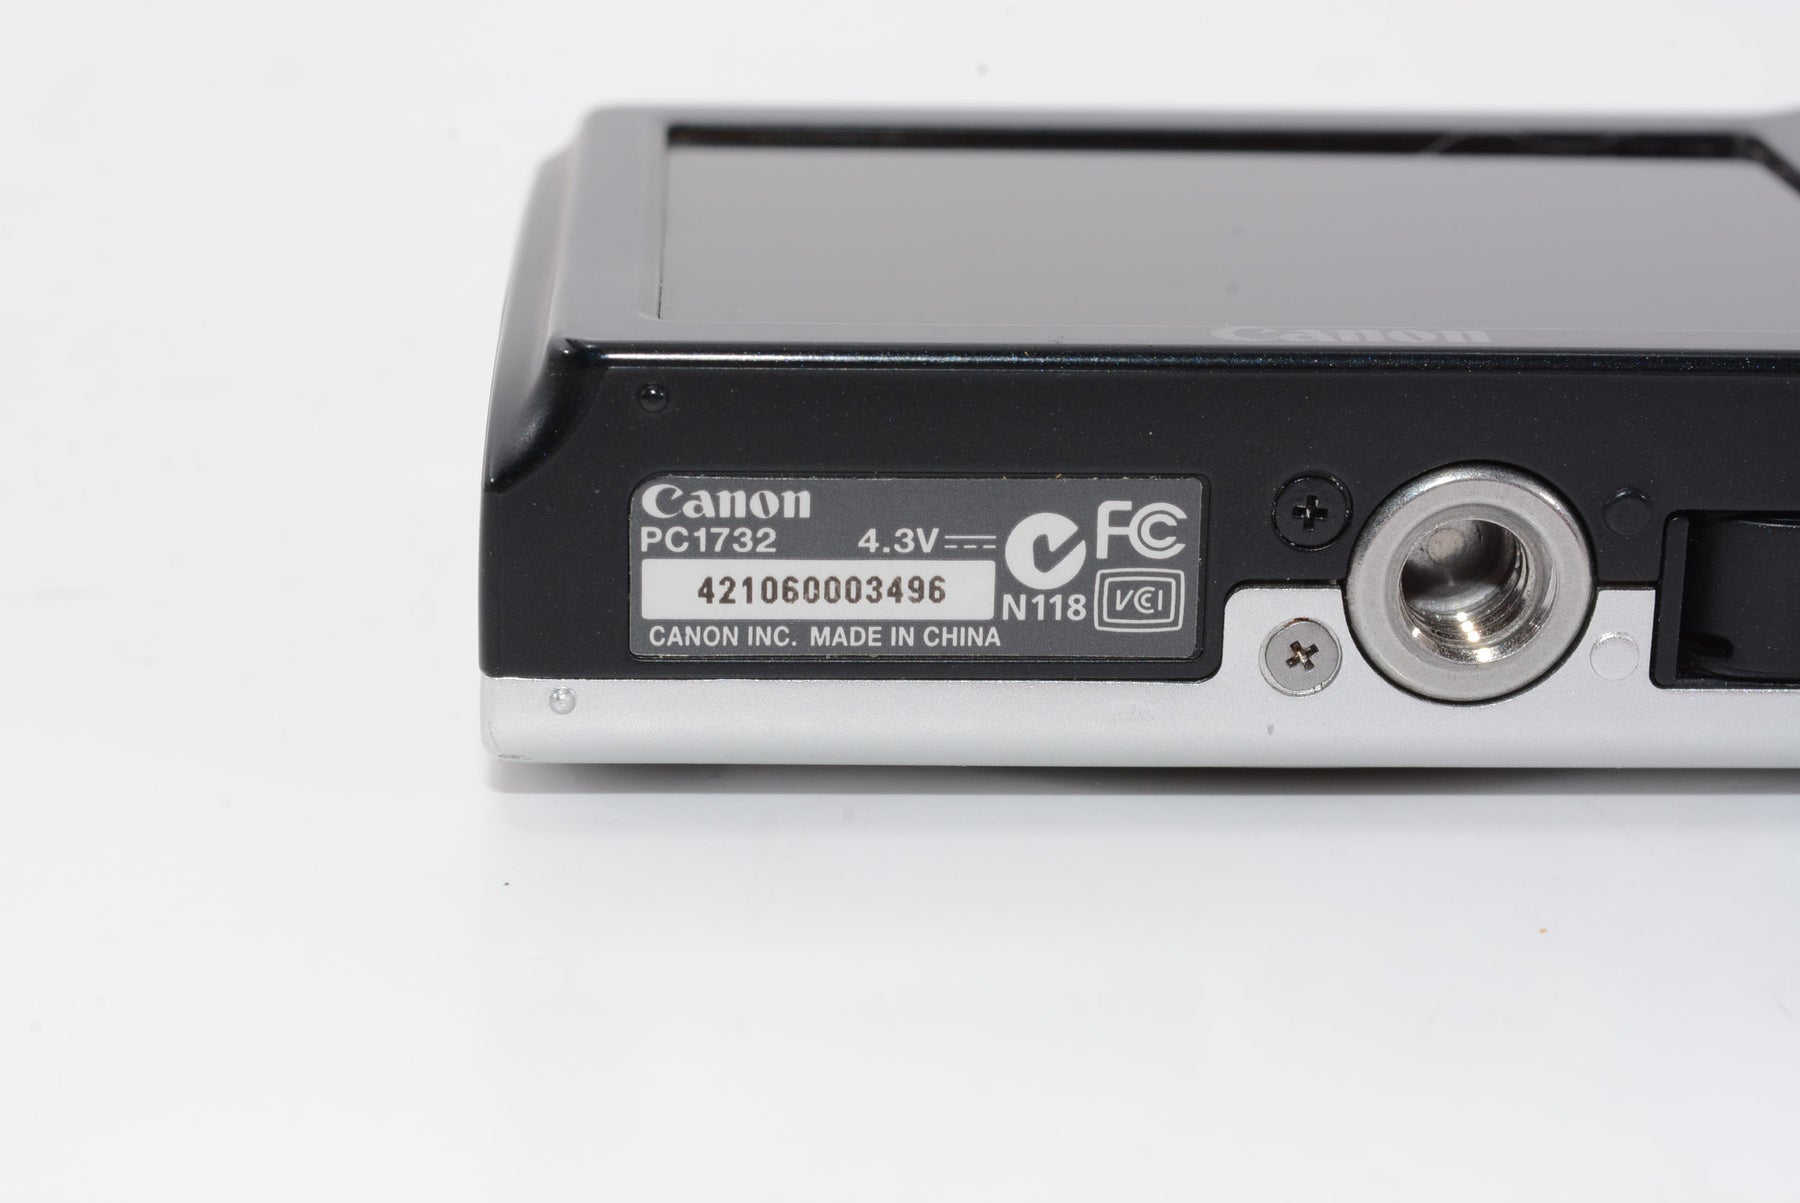 【外観特上級】Canon デジタルカメラ PowerShot A2300 シルバー 光学5倍ズーム 約1600万画素 PSA2300(SL)